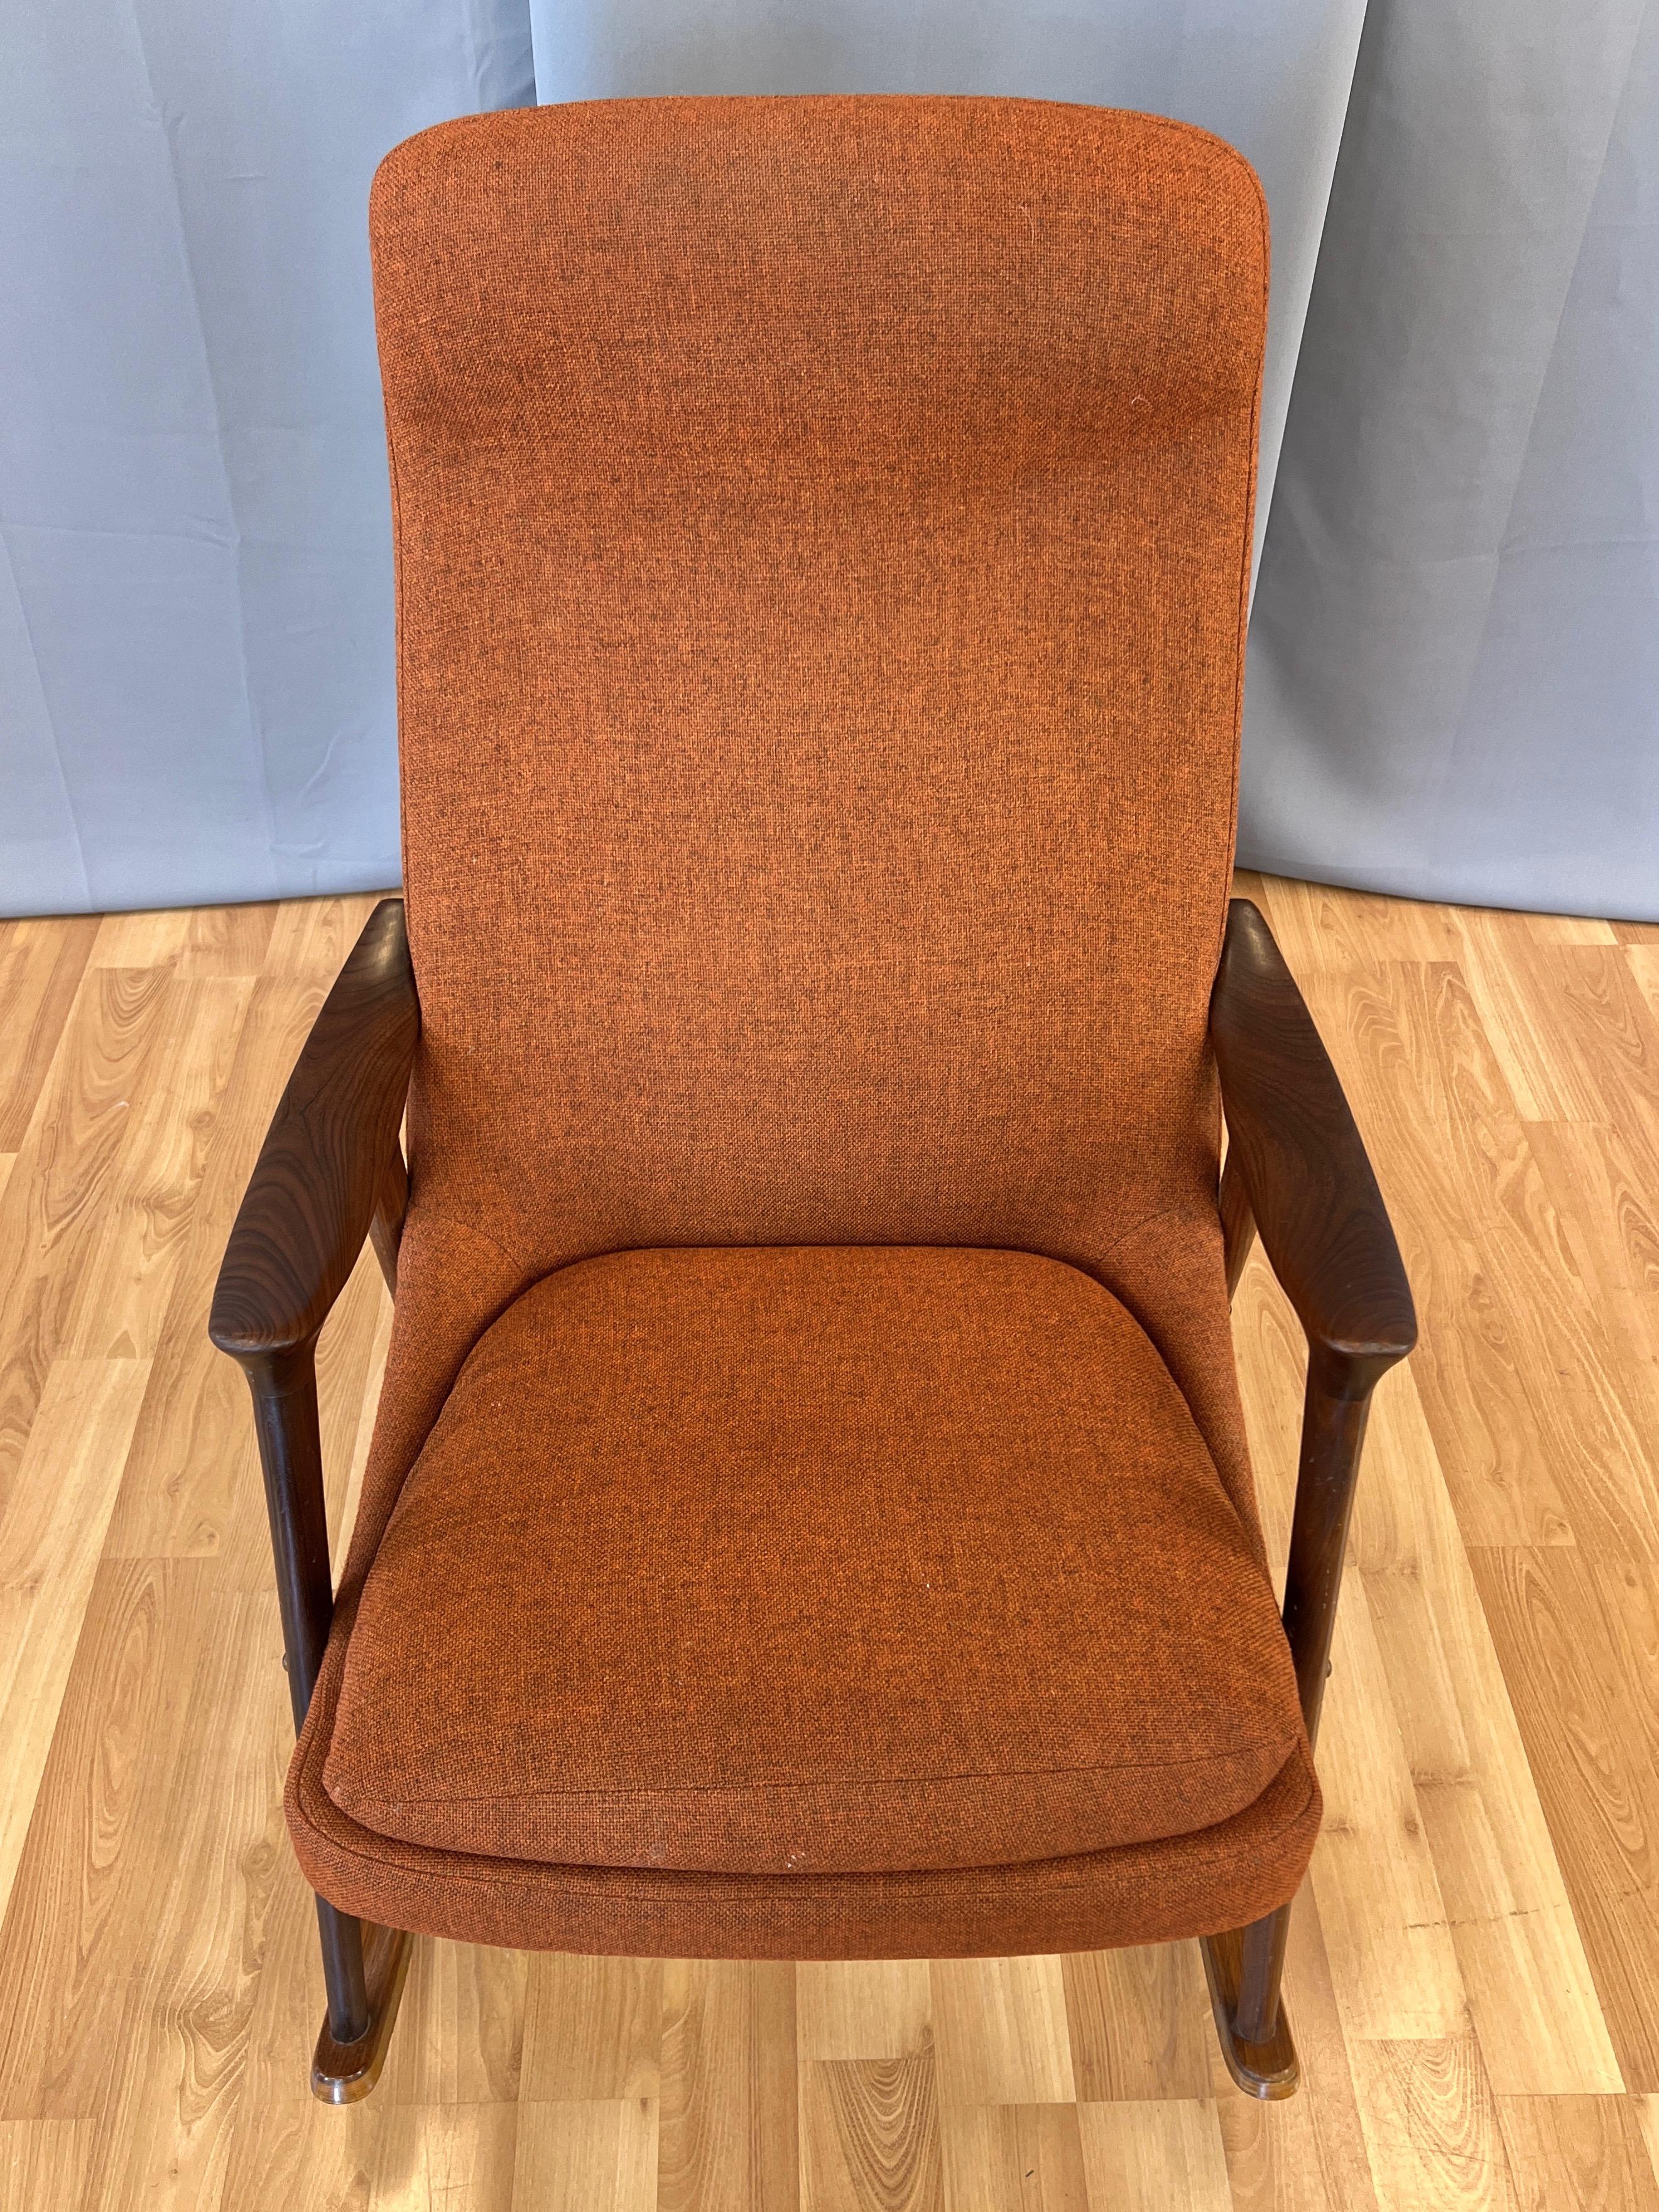 Hand-Carved Ingmar Relling for Westnofa High-Back Sculptural Teak Rocking Chair, 1960s For Sale